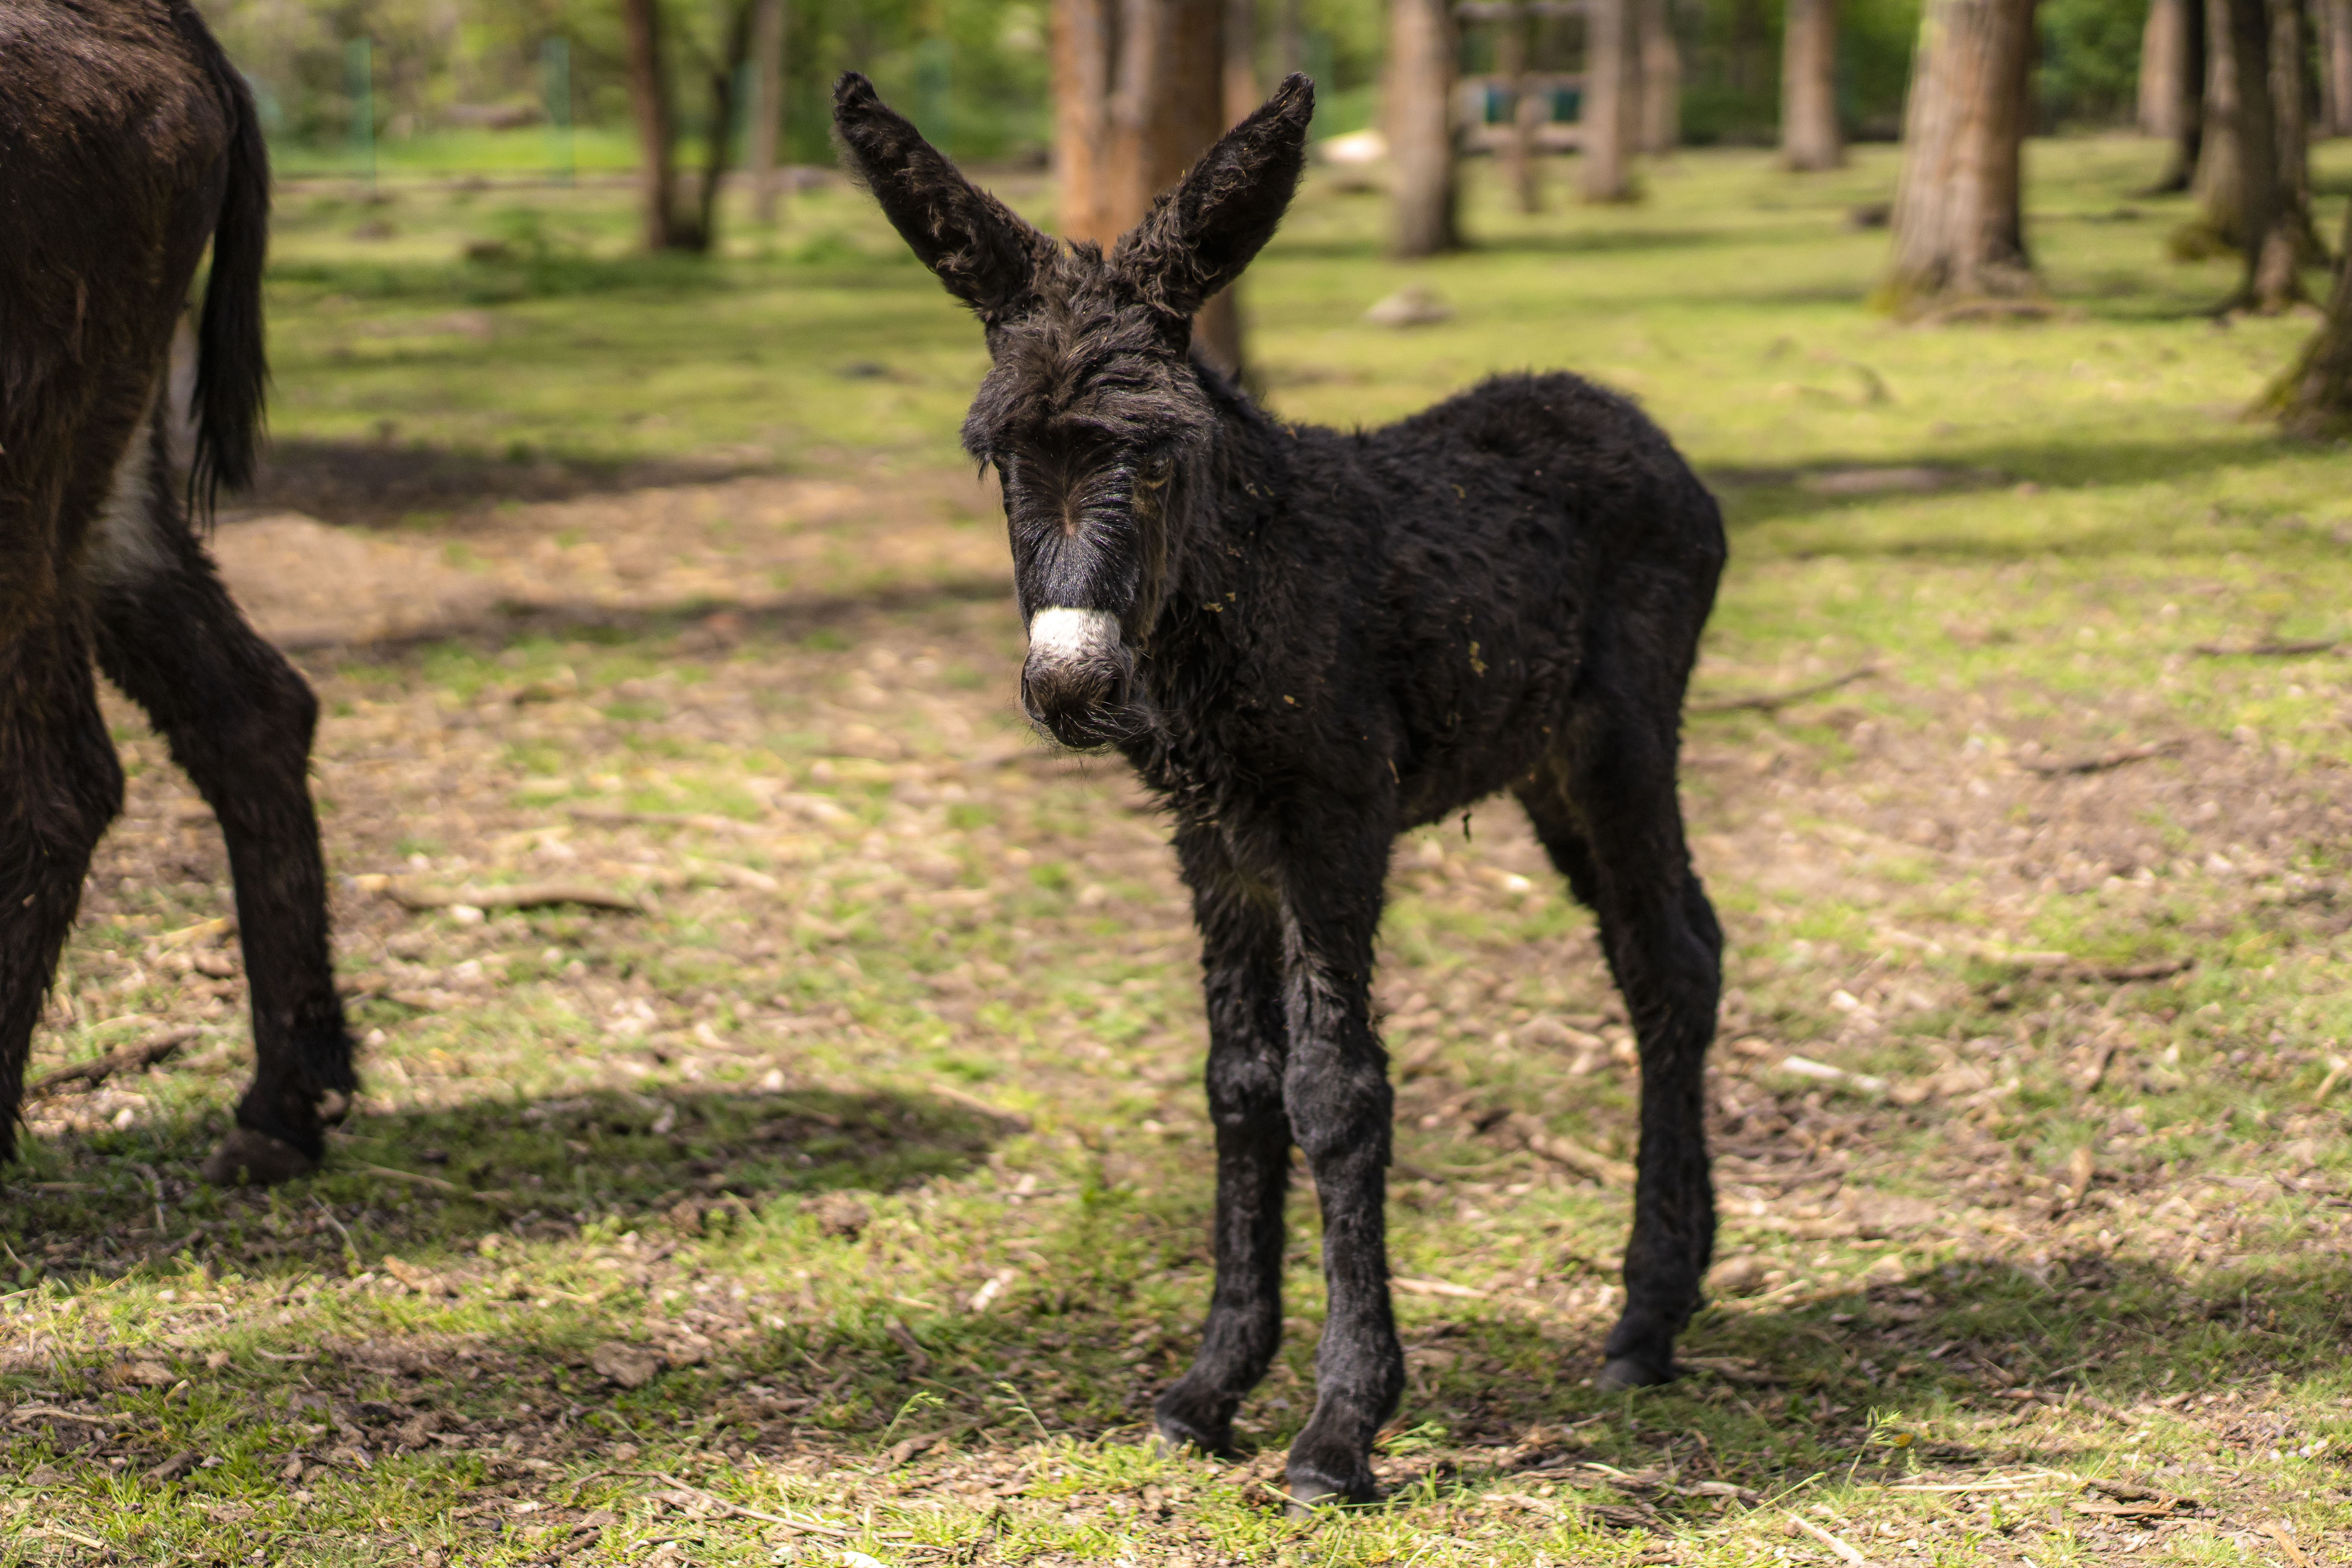 Jubileumi jövevény a Zoo Debrecenben, megszületett Maja, a parlagi szamárcsikó! - 2. kép Online Rádió - Egy Lépéssel Közelebb Hozzád! _ LépésRádió